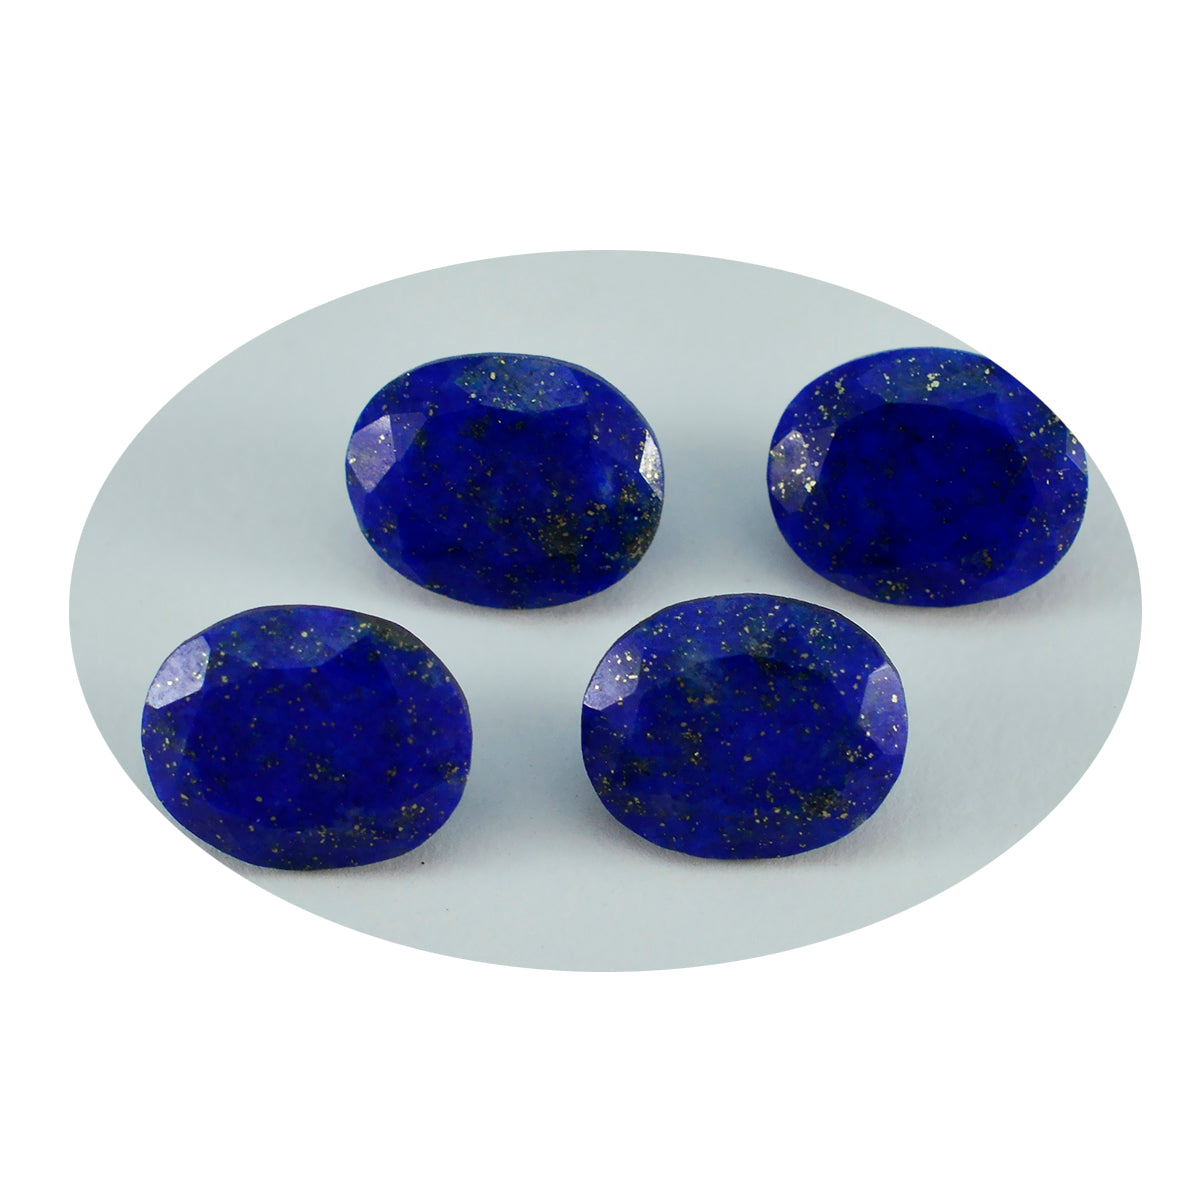 Riyogems 1PC Echte Blauwe Lapis Lazuli Facet 10x12 mm Ovale Vorm verbazingwekkende Kwaliteit Losse Steen